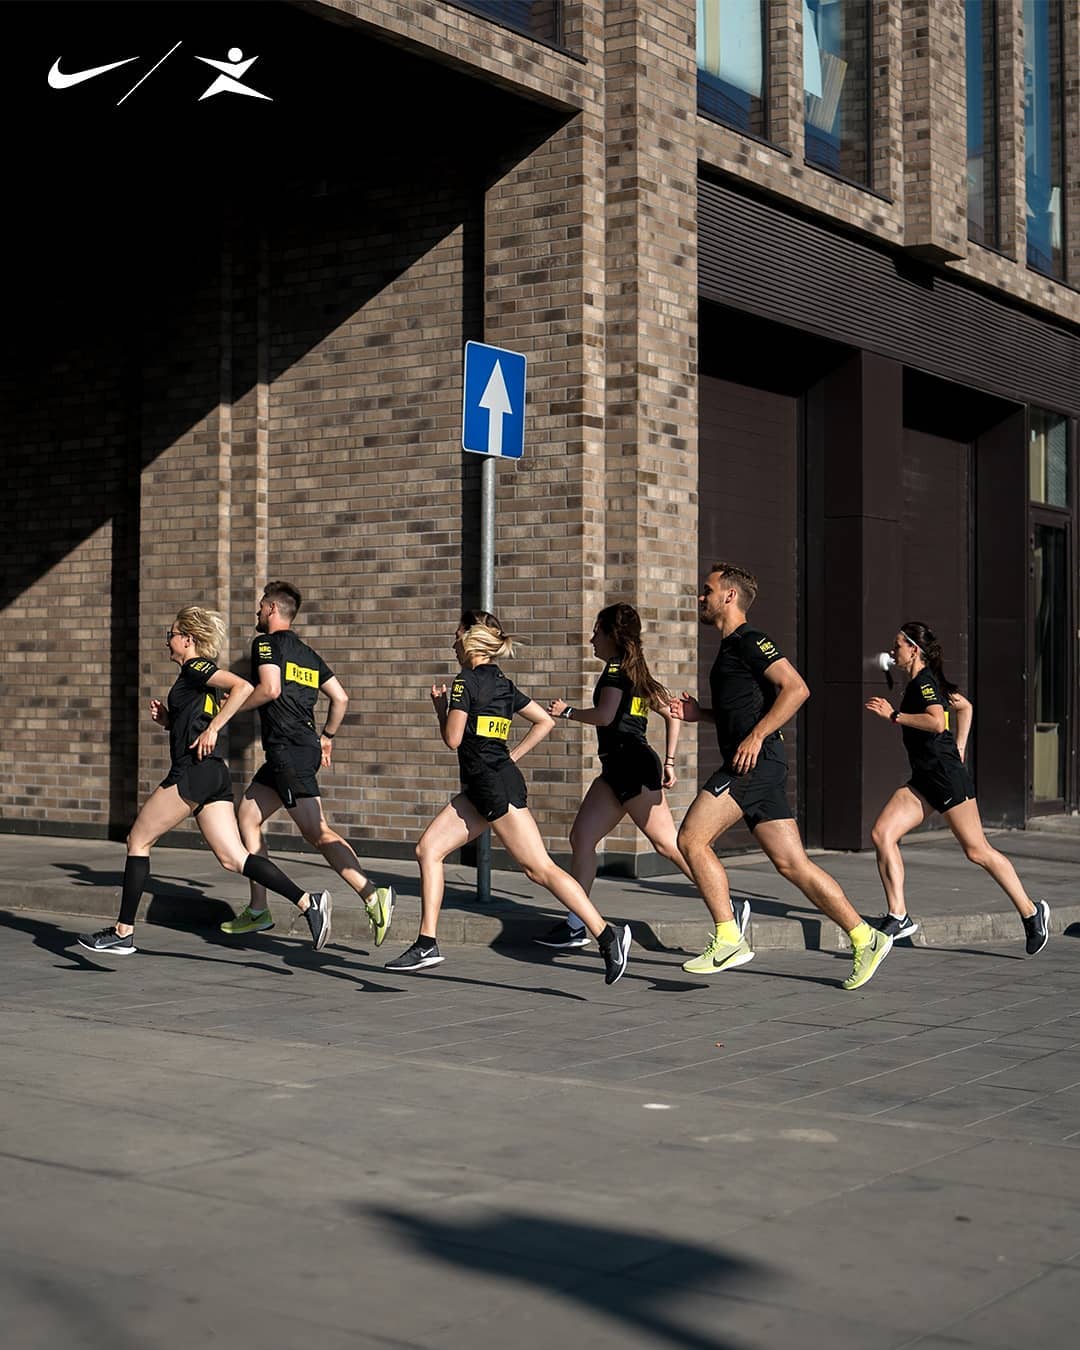 Спортмастер - Наскучило бегать по одним и тем же маршрутам? Открой новые вместе с проектом Nike и Спортмастер «Город для бега»!
⠀
Присоединяйся к движению, стань частью бегового сообщества в своем г...